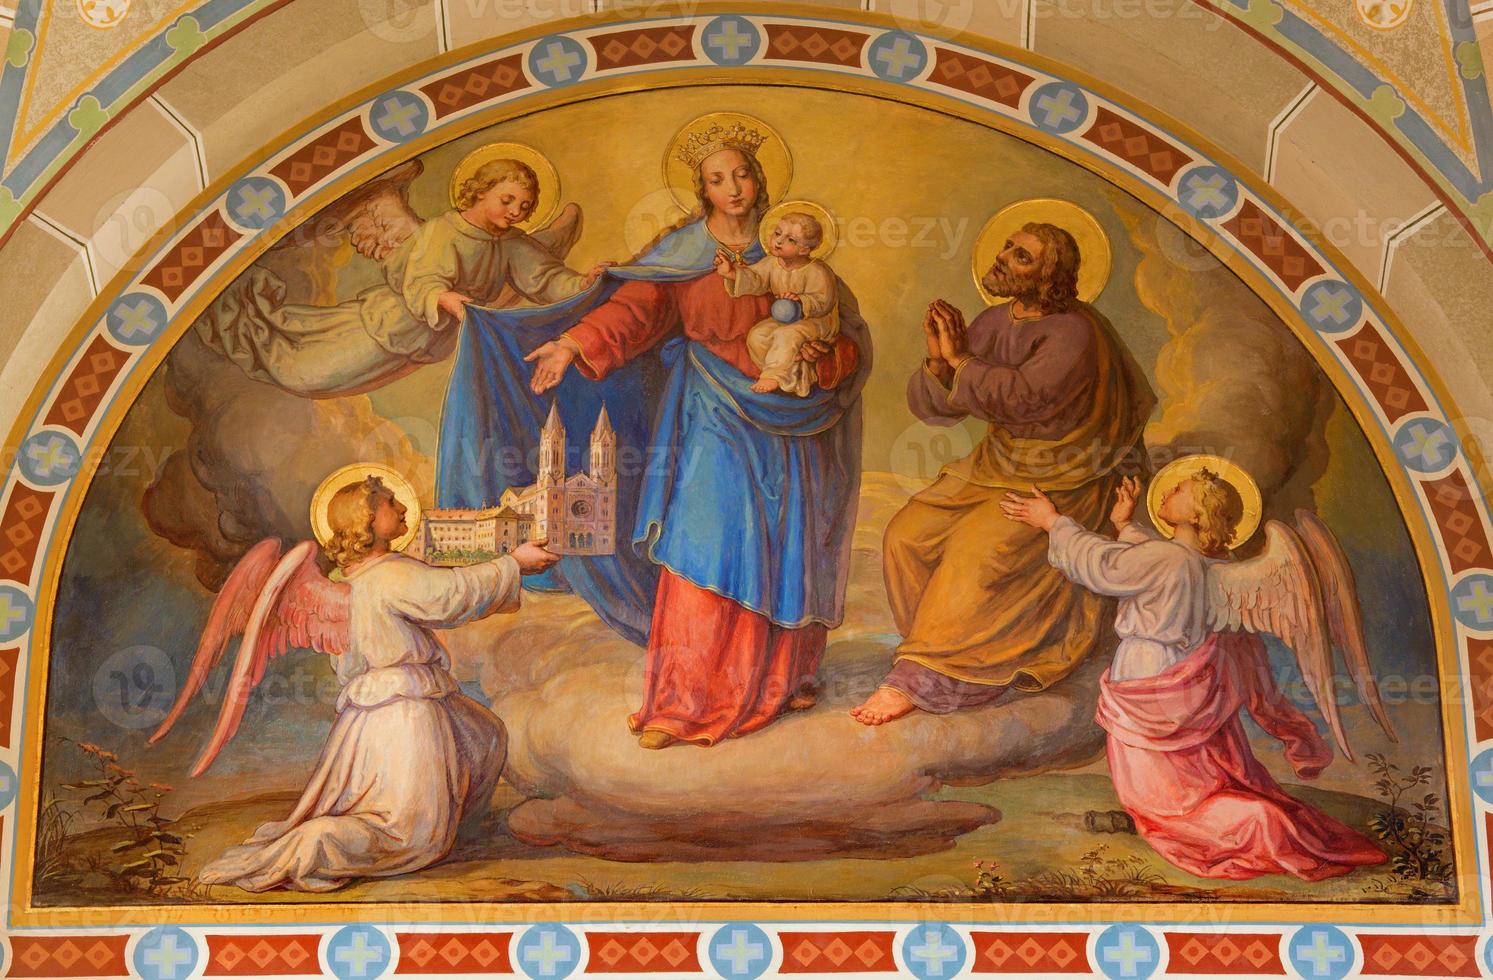 viena - fresco de madonna en la iglesia carmelita foto